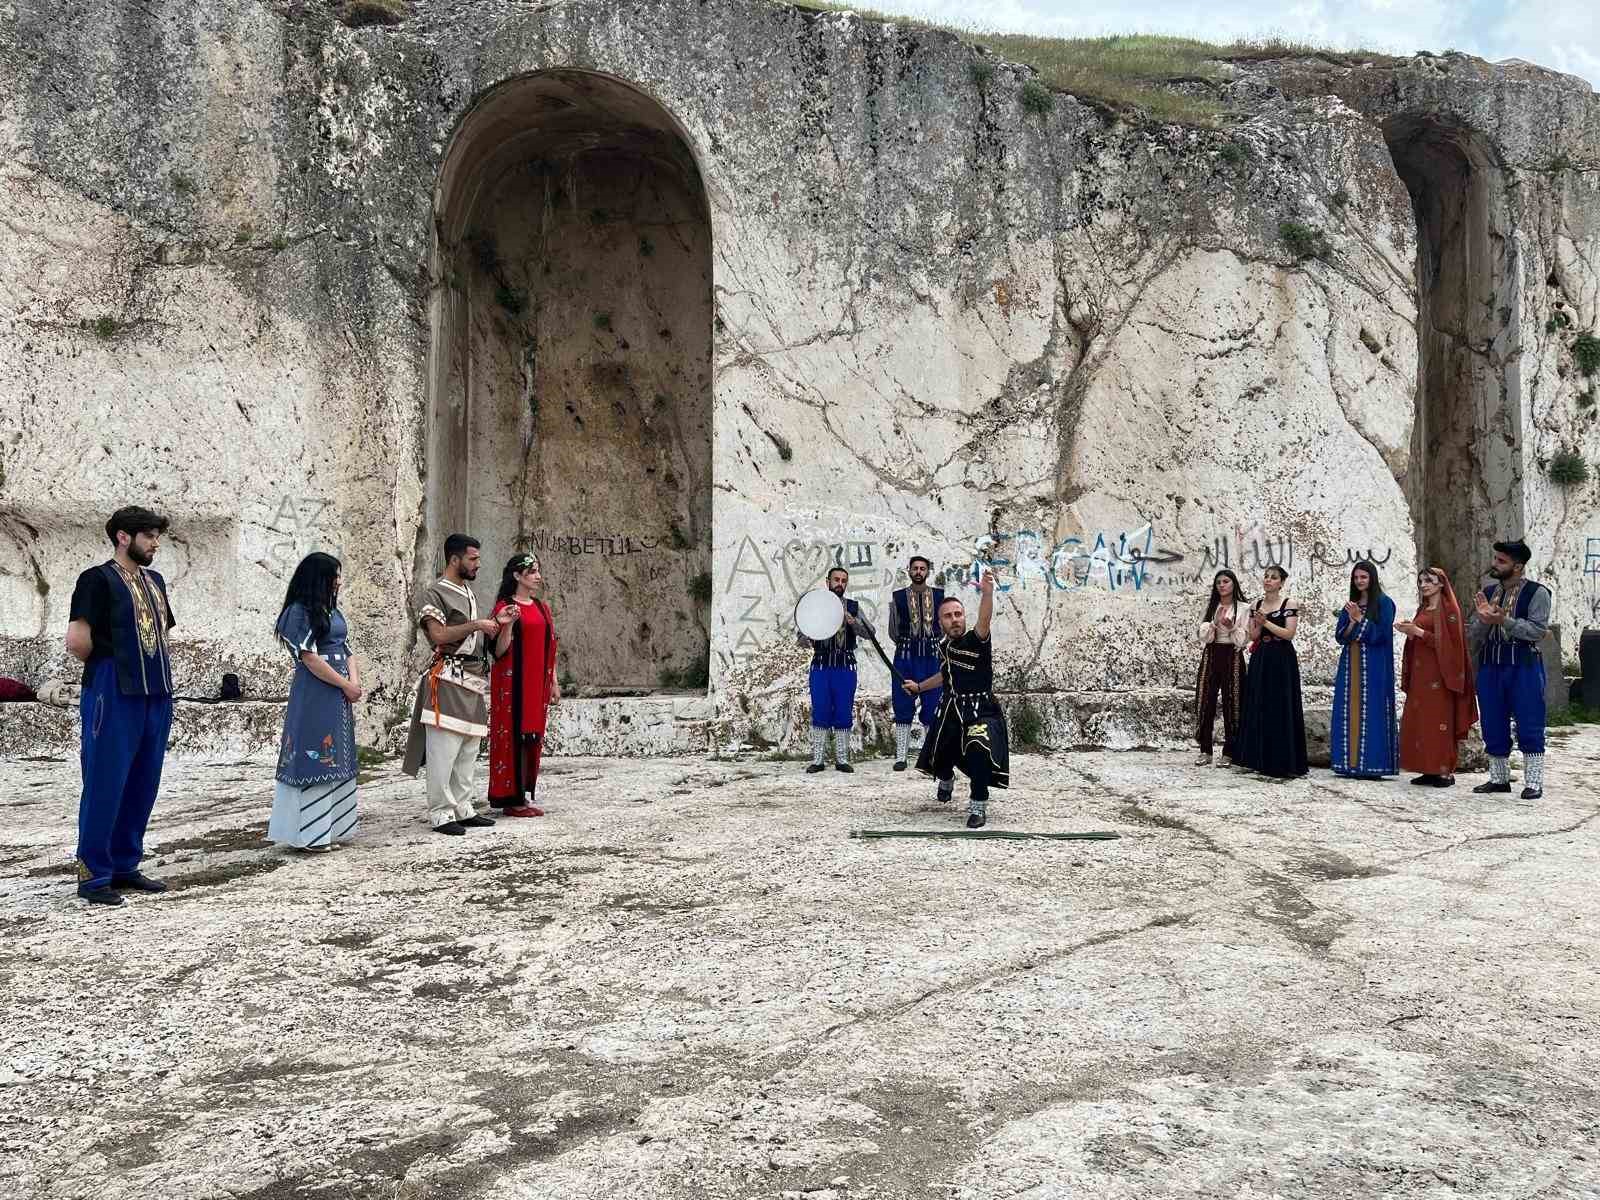 Urartuların kalesinde Urartu konulu oyun sahnelendi